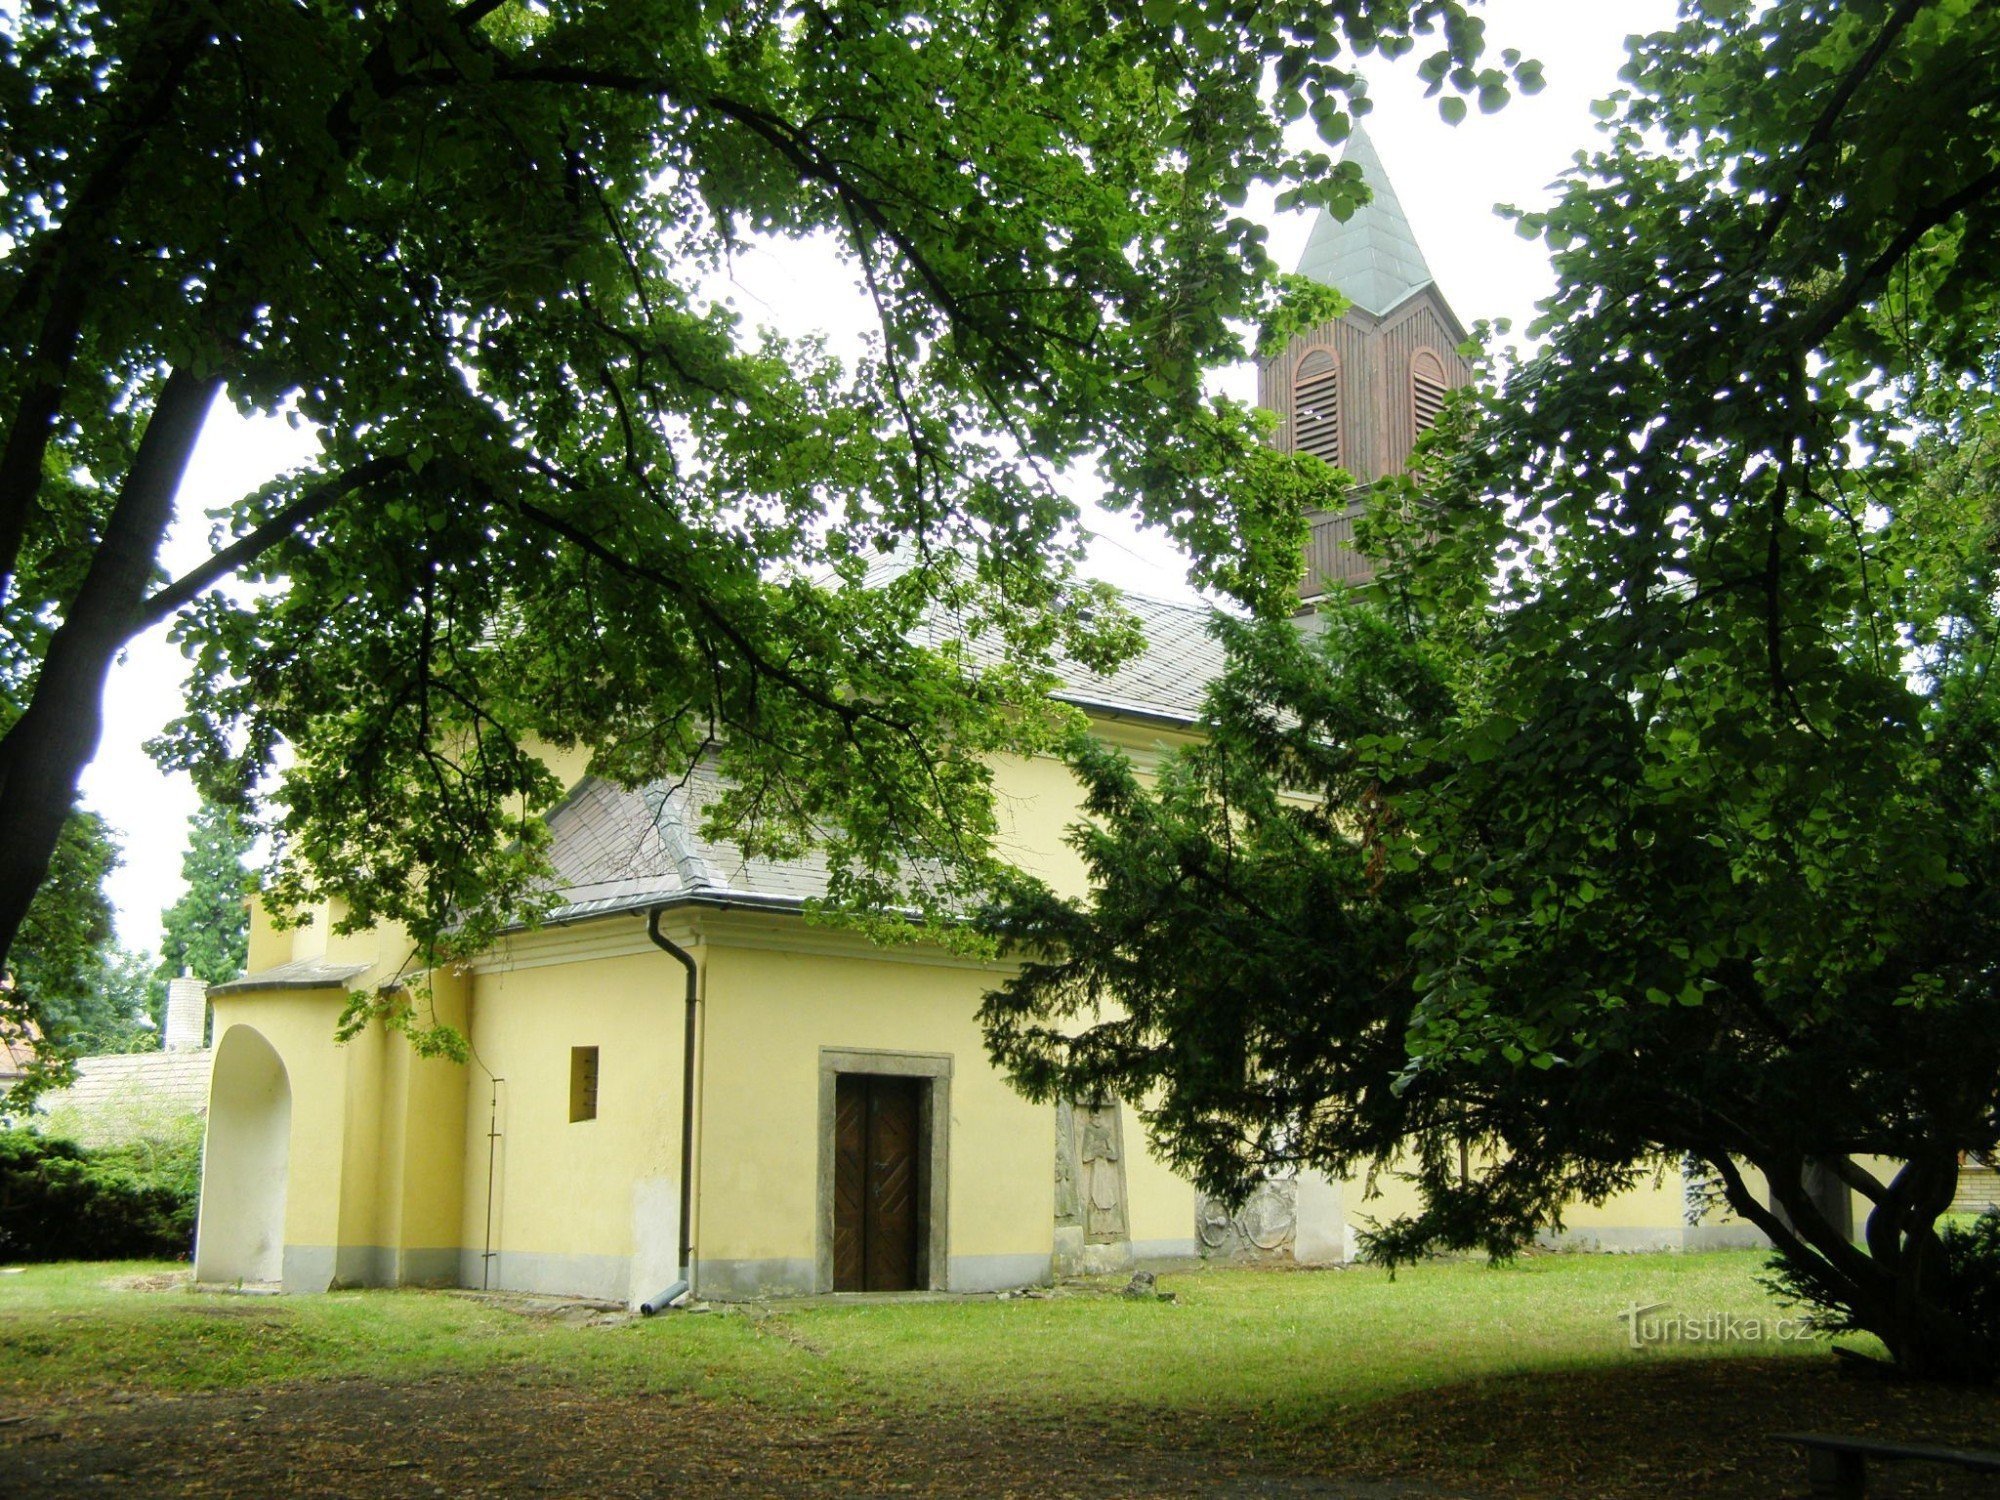 Chlumec nad Cidlinou - Den heliga treenighetens kyrka